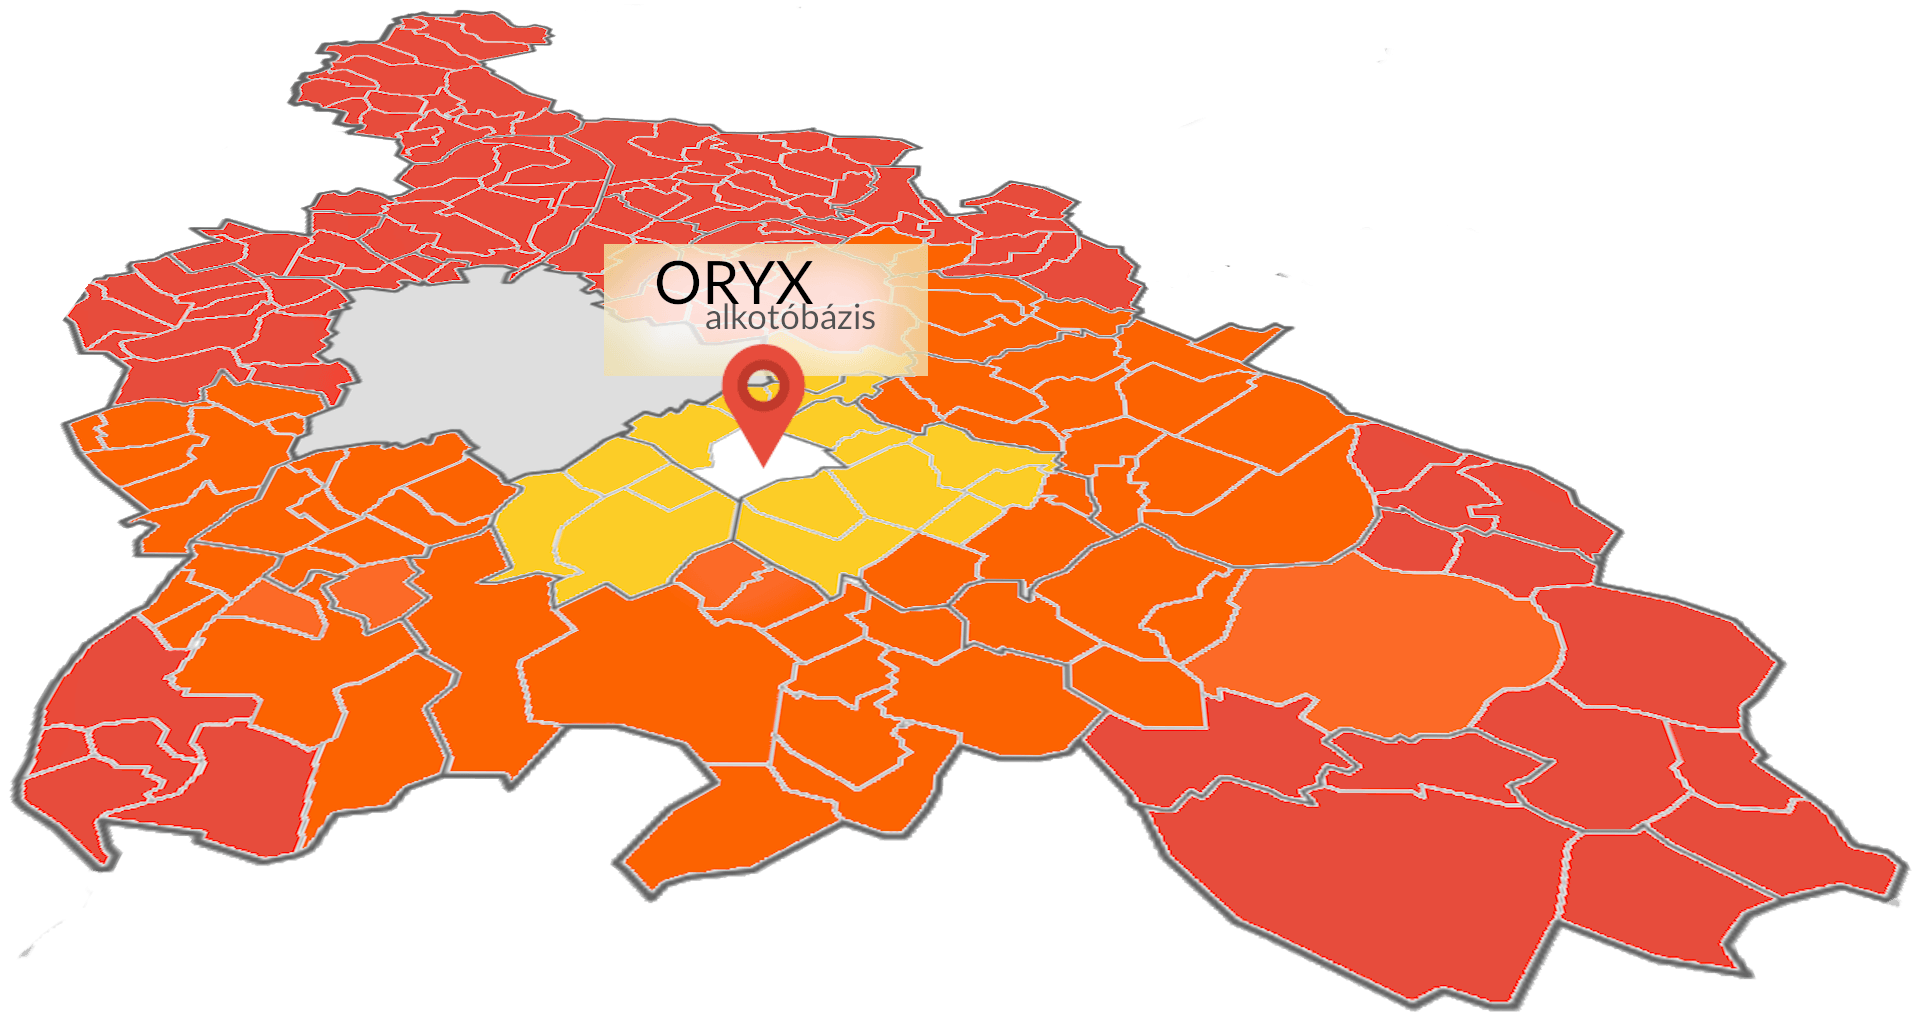 Oryx kiszállítási térkép Budapest